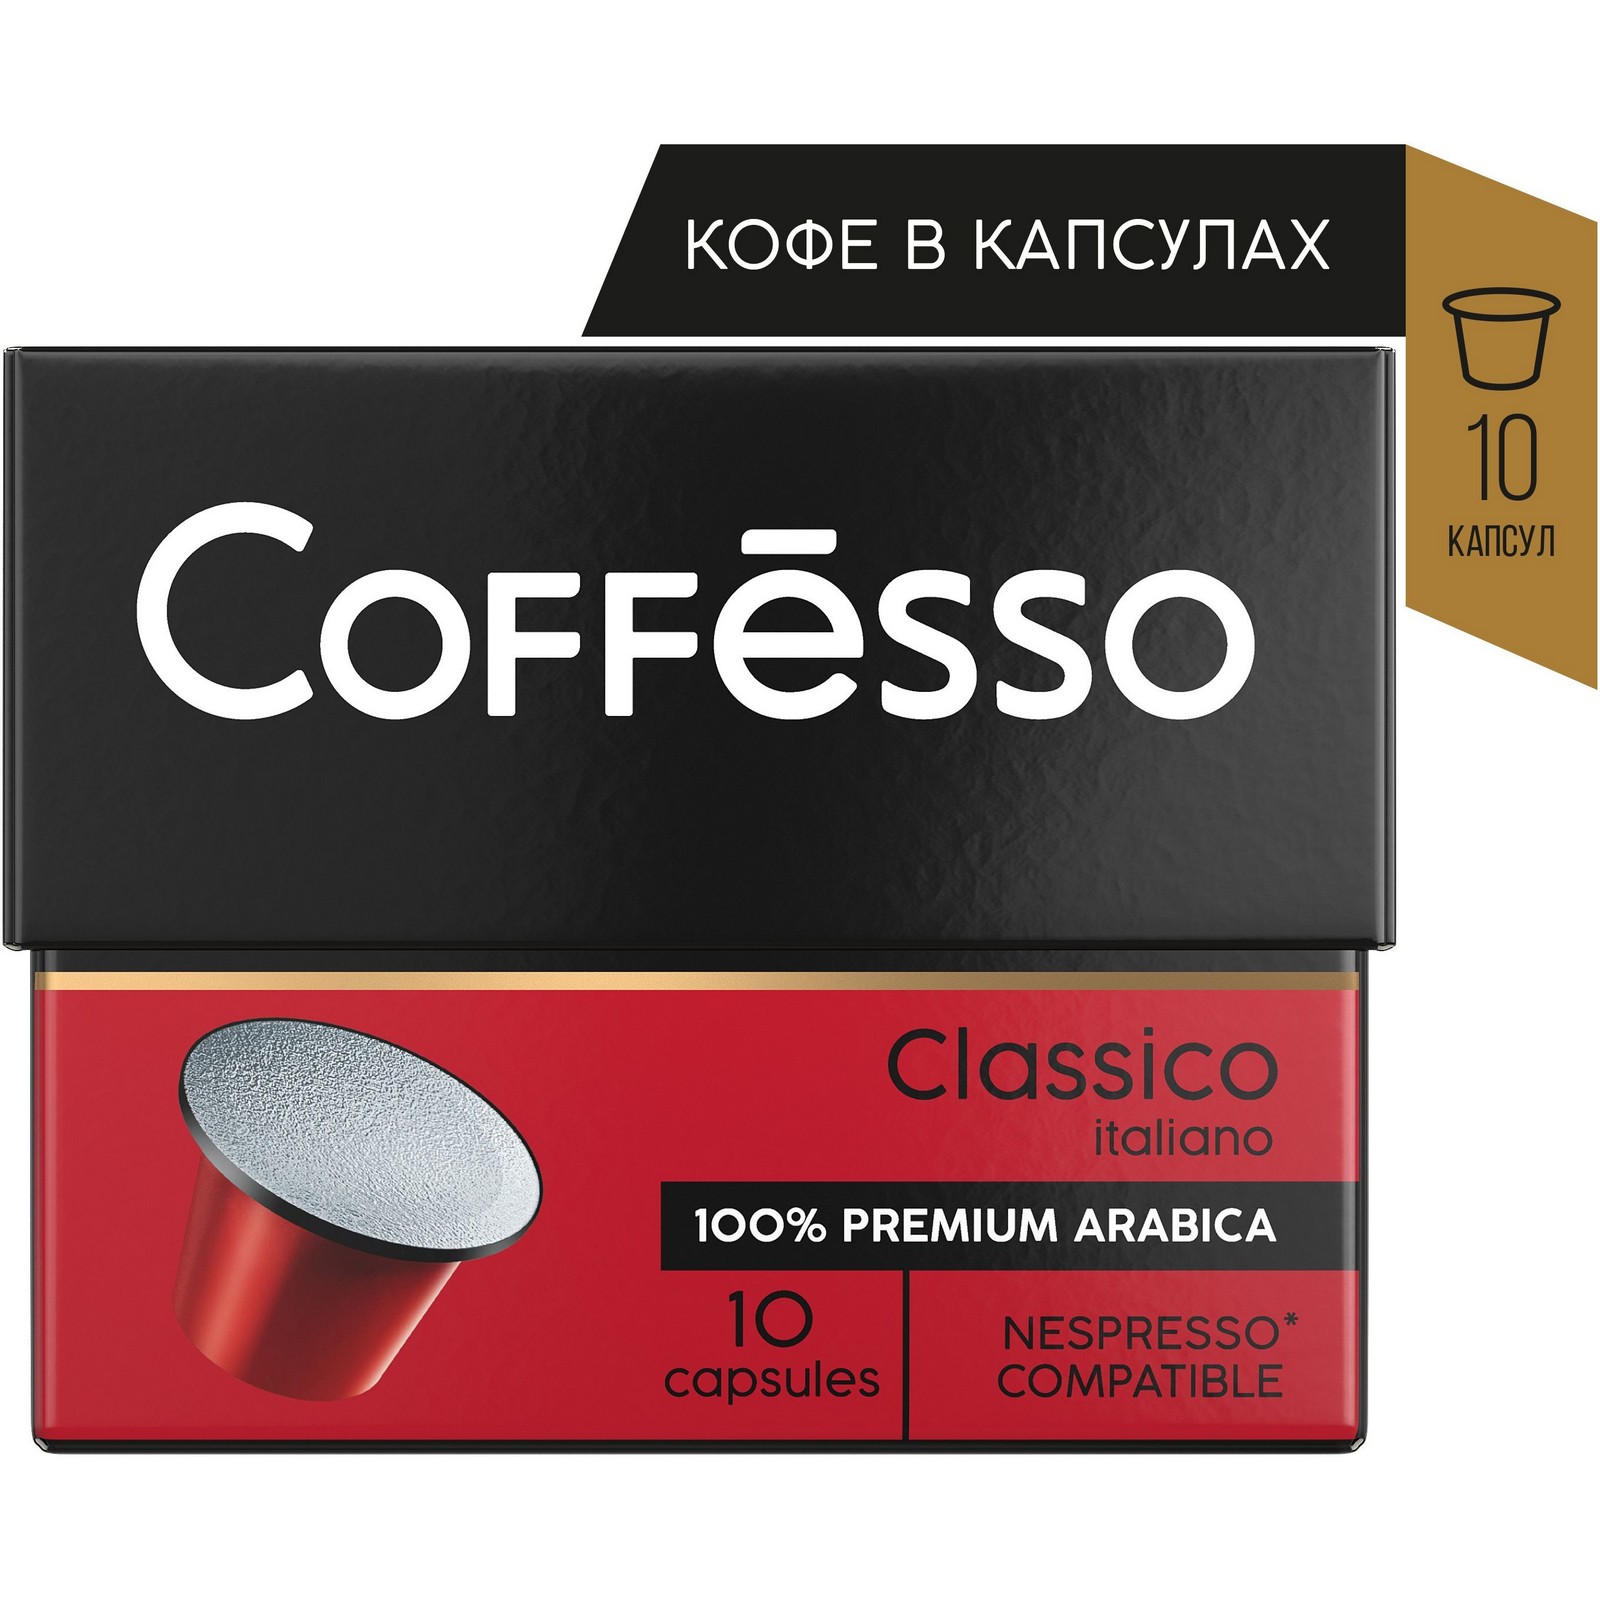 Молотый кофе в капсулах. Кофе в капсулах Coffesso Classico italiano. Капсулы Nespresso cofesso. Coffesso капсулы. Coffesso капсулы 10шт.